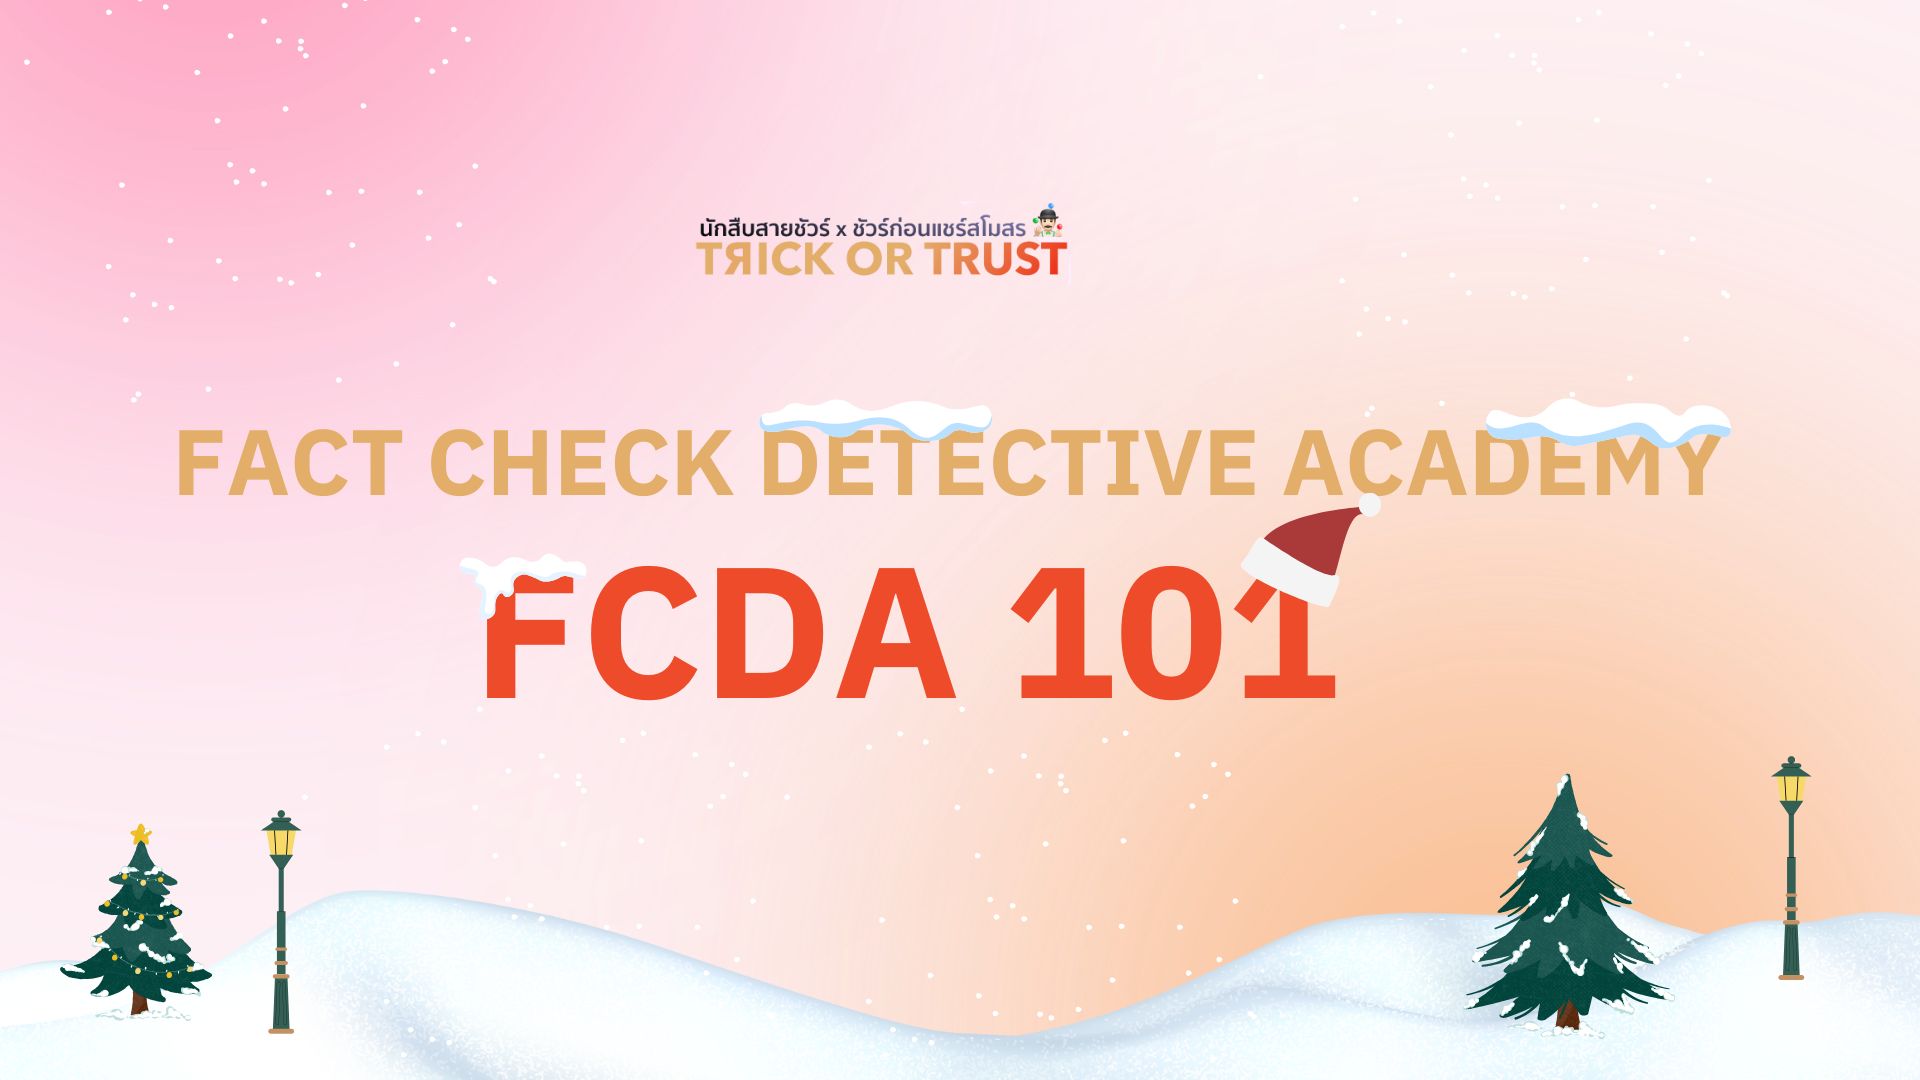 FACT CHECK DETECTIVE ACADEMY FCDA 101 